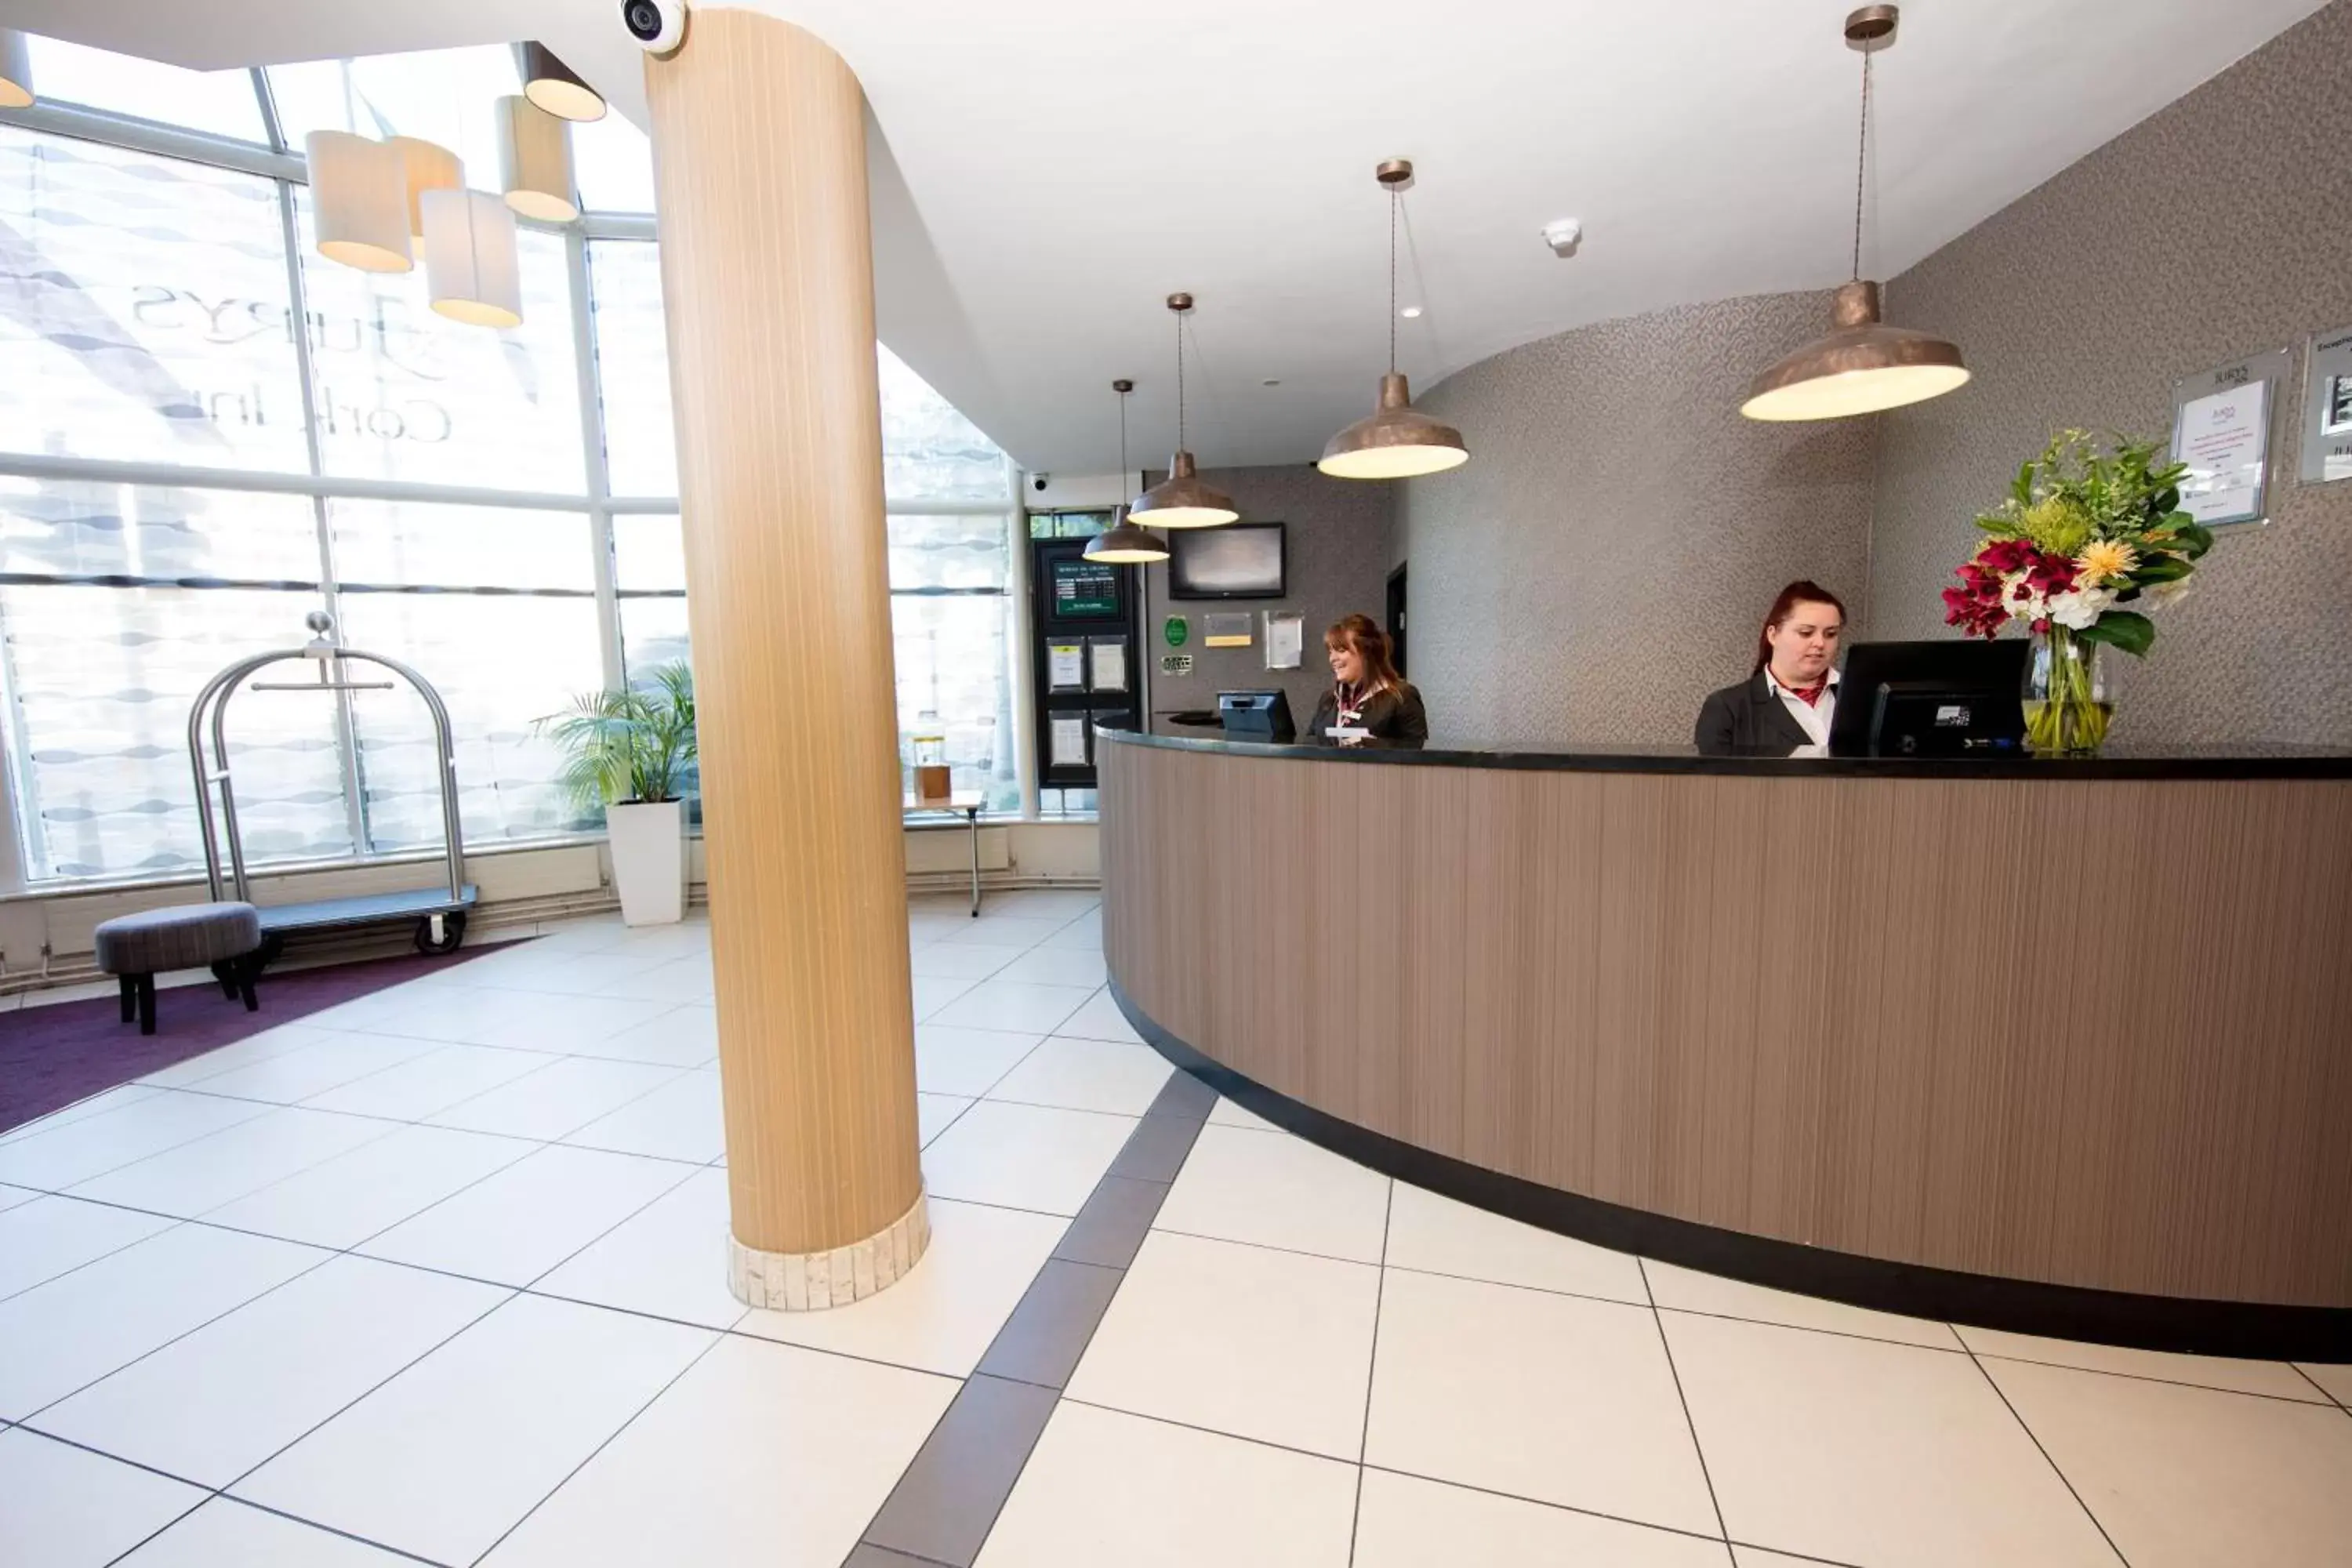 Lobby or reception, Lobby/Reception in Leonardo Hotel Cork - Formerly Jurys Inn